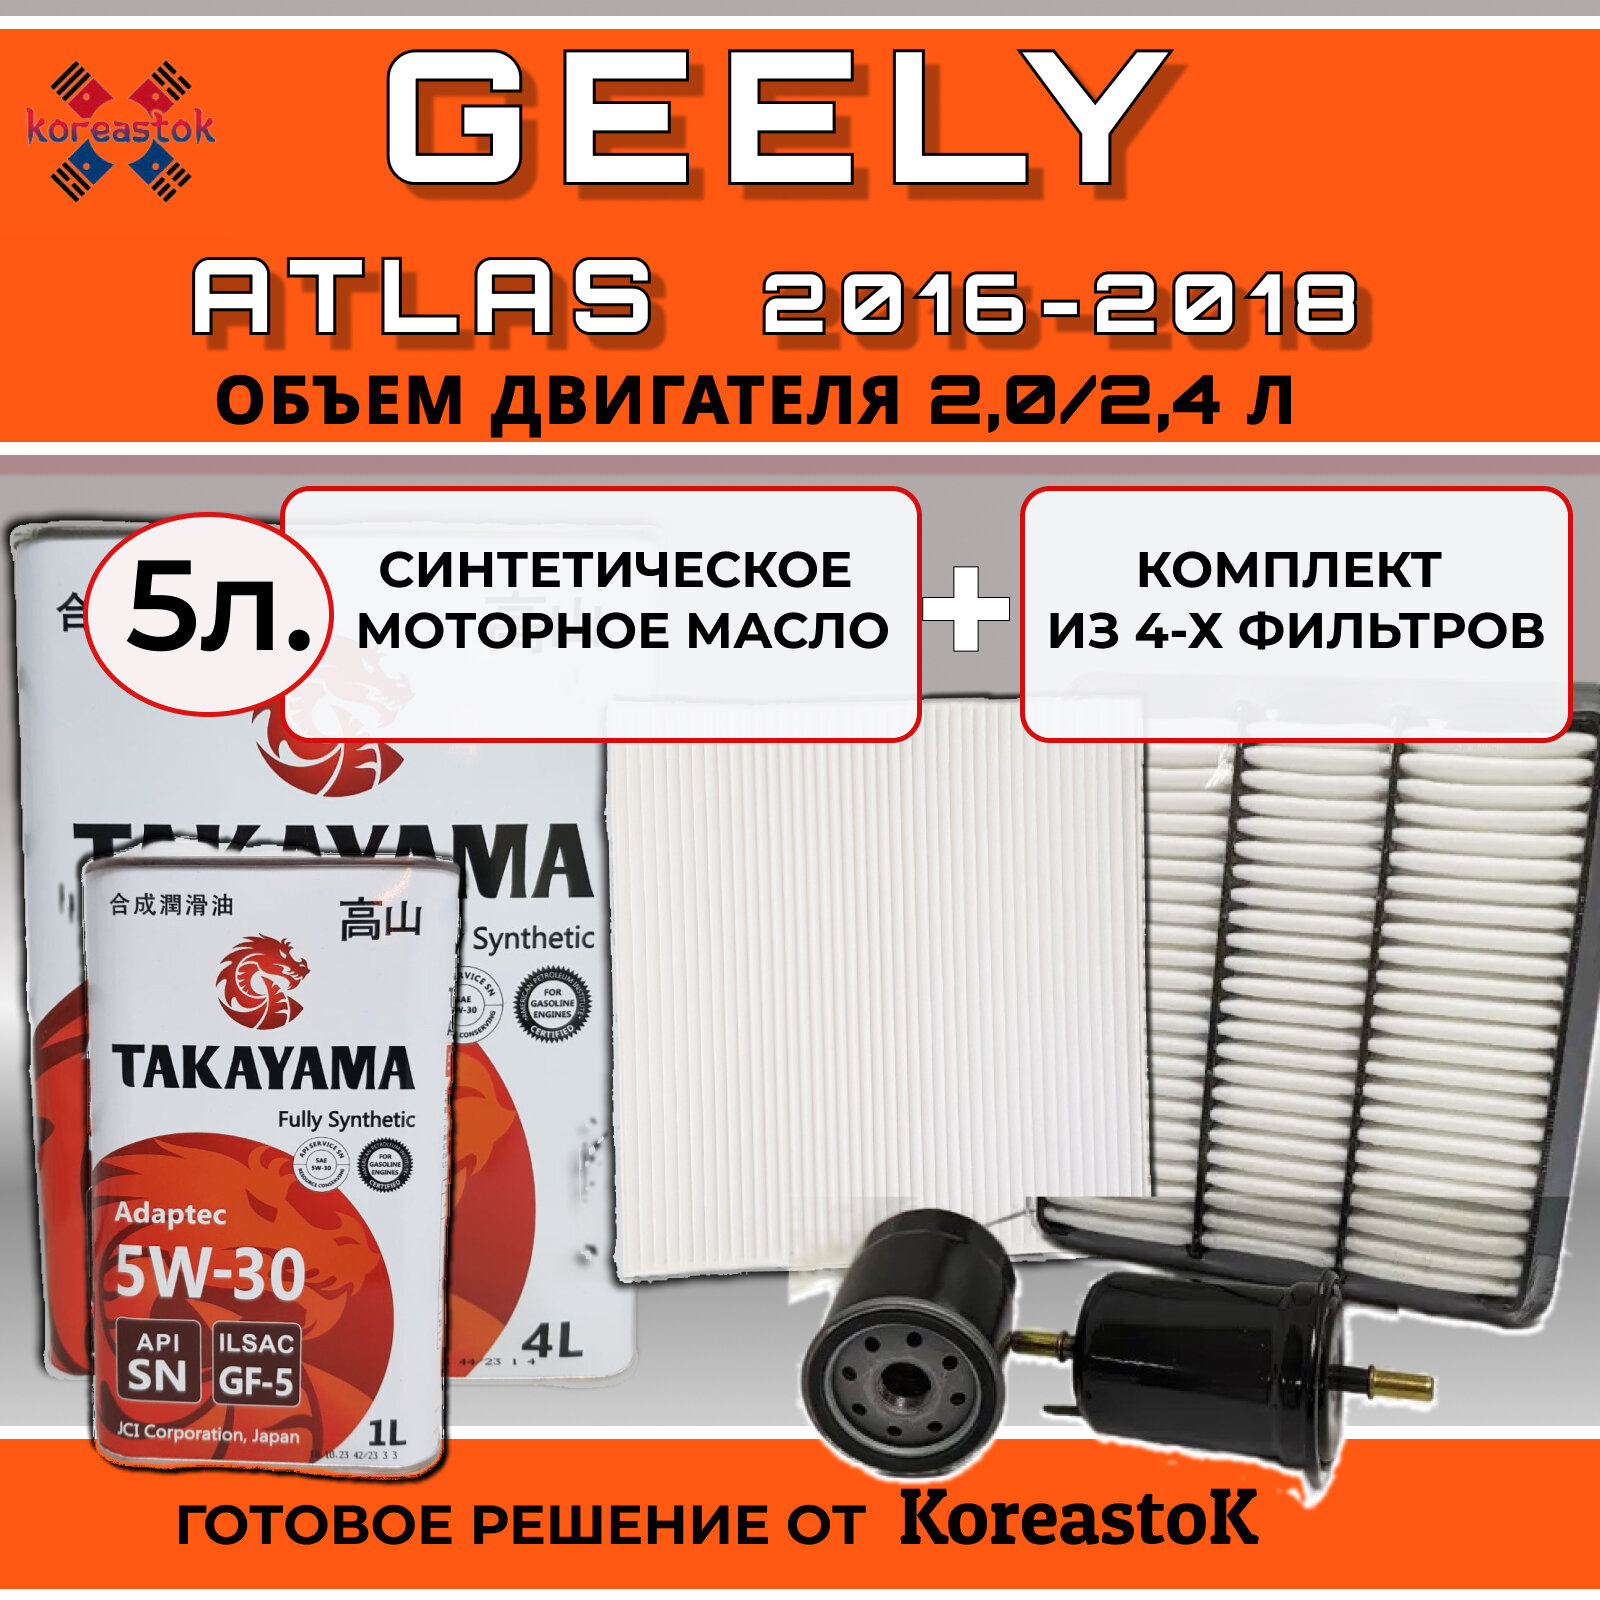 Комплект из 4-х фильтров для Geely Atlas 2016-2018 + синтетическое моторное масло Takayama 5л.